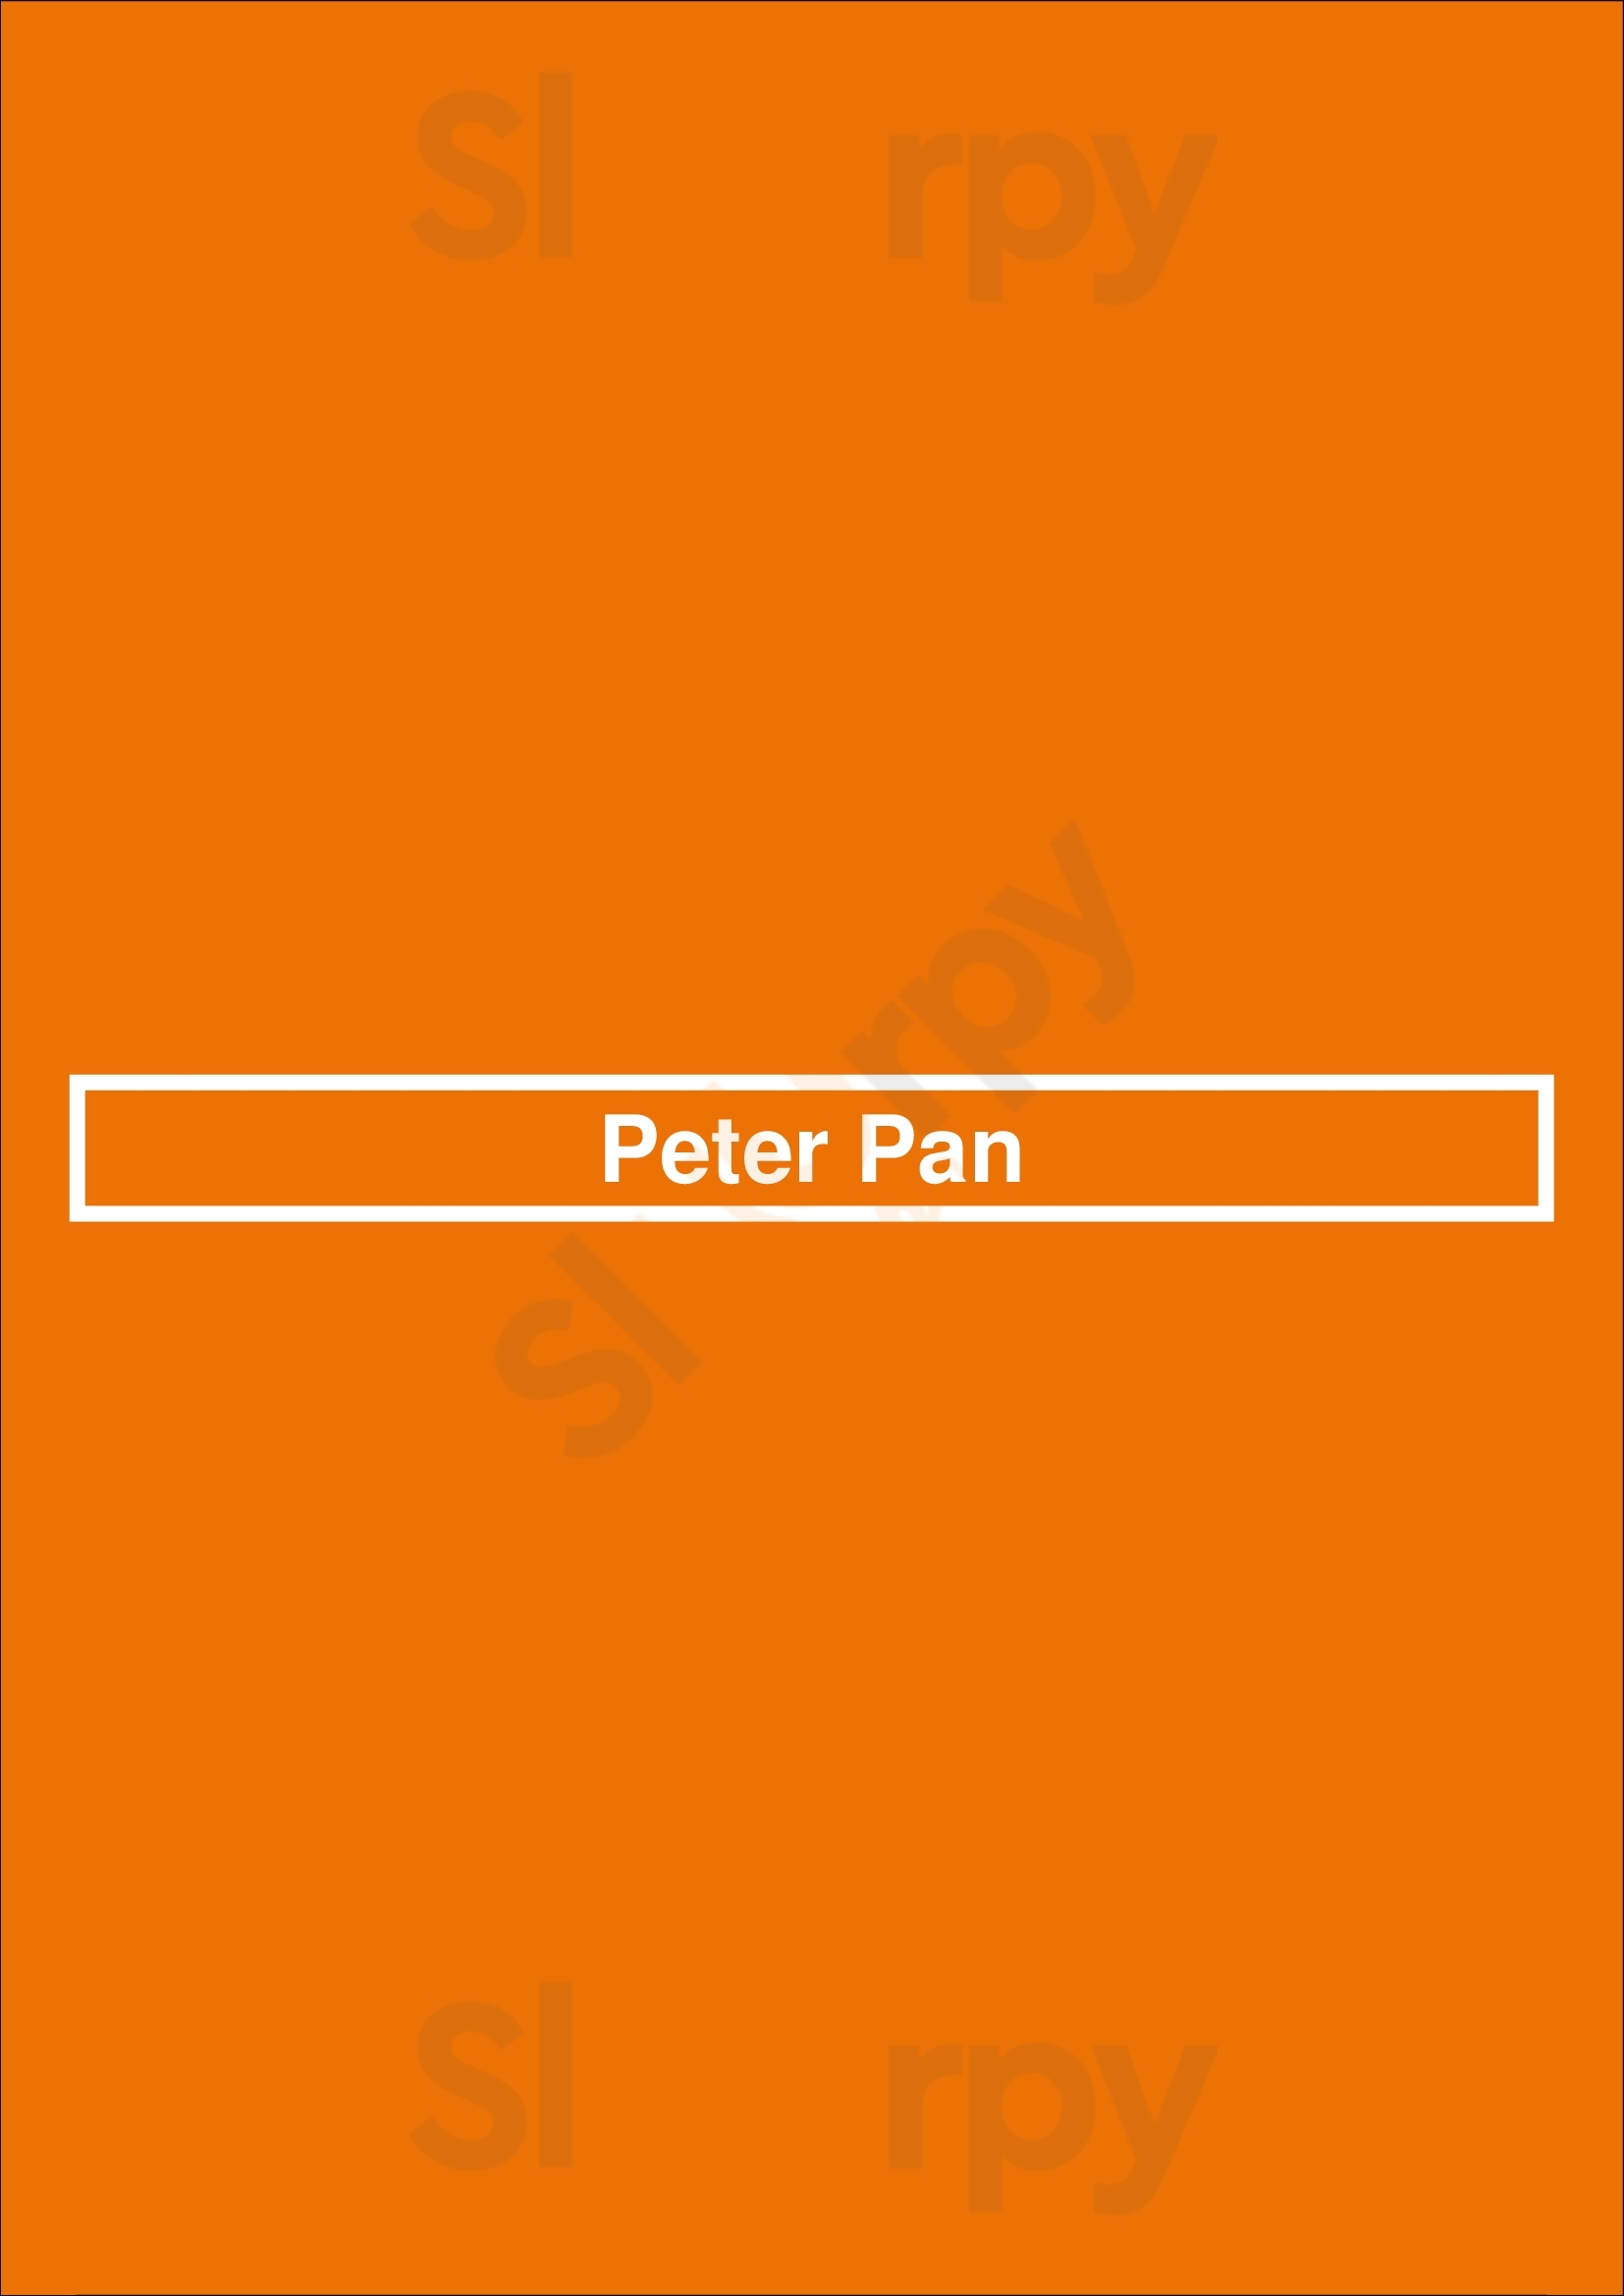 Peter Pan Toronto Menu - 1